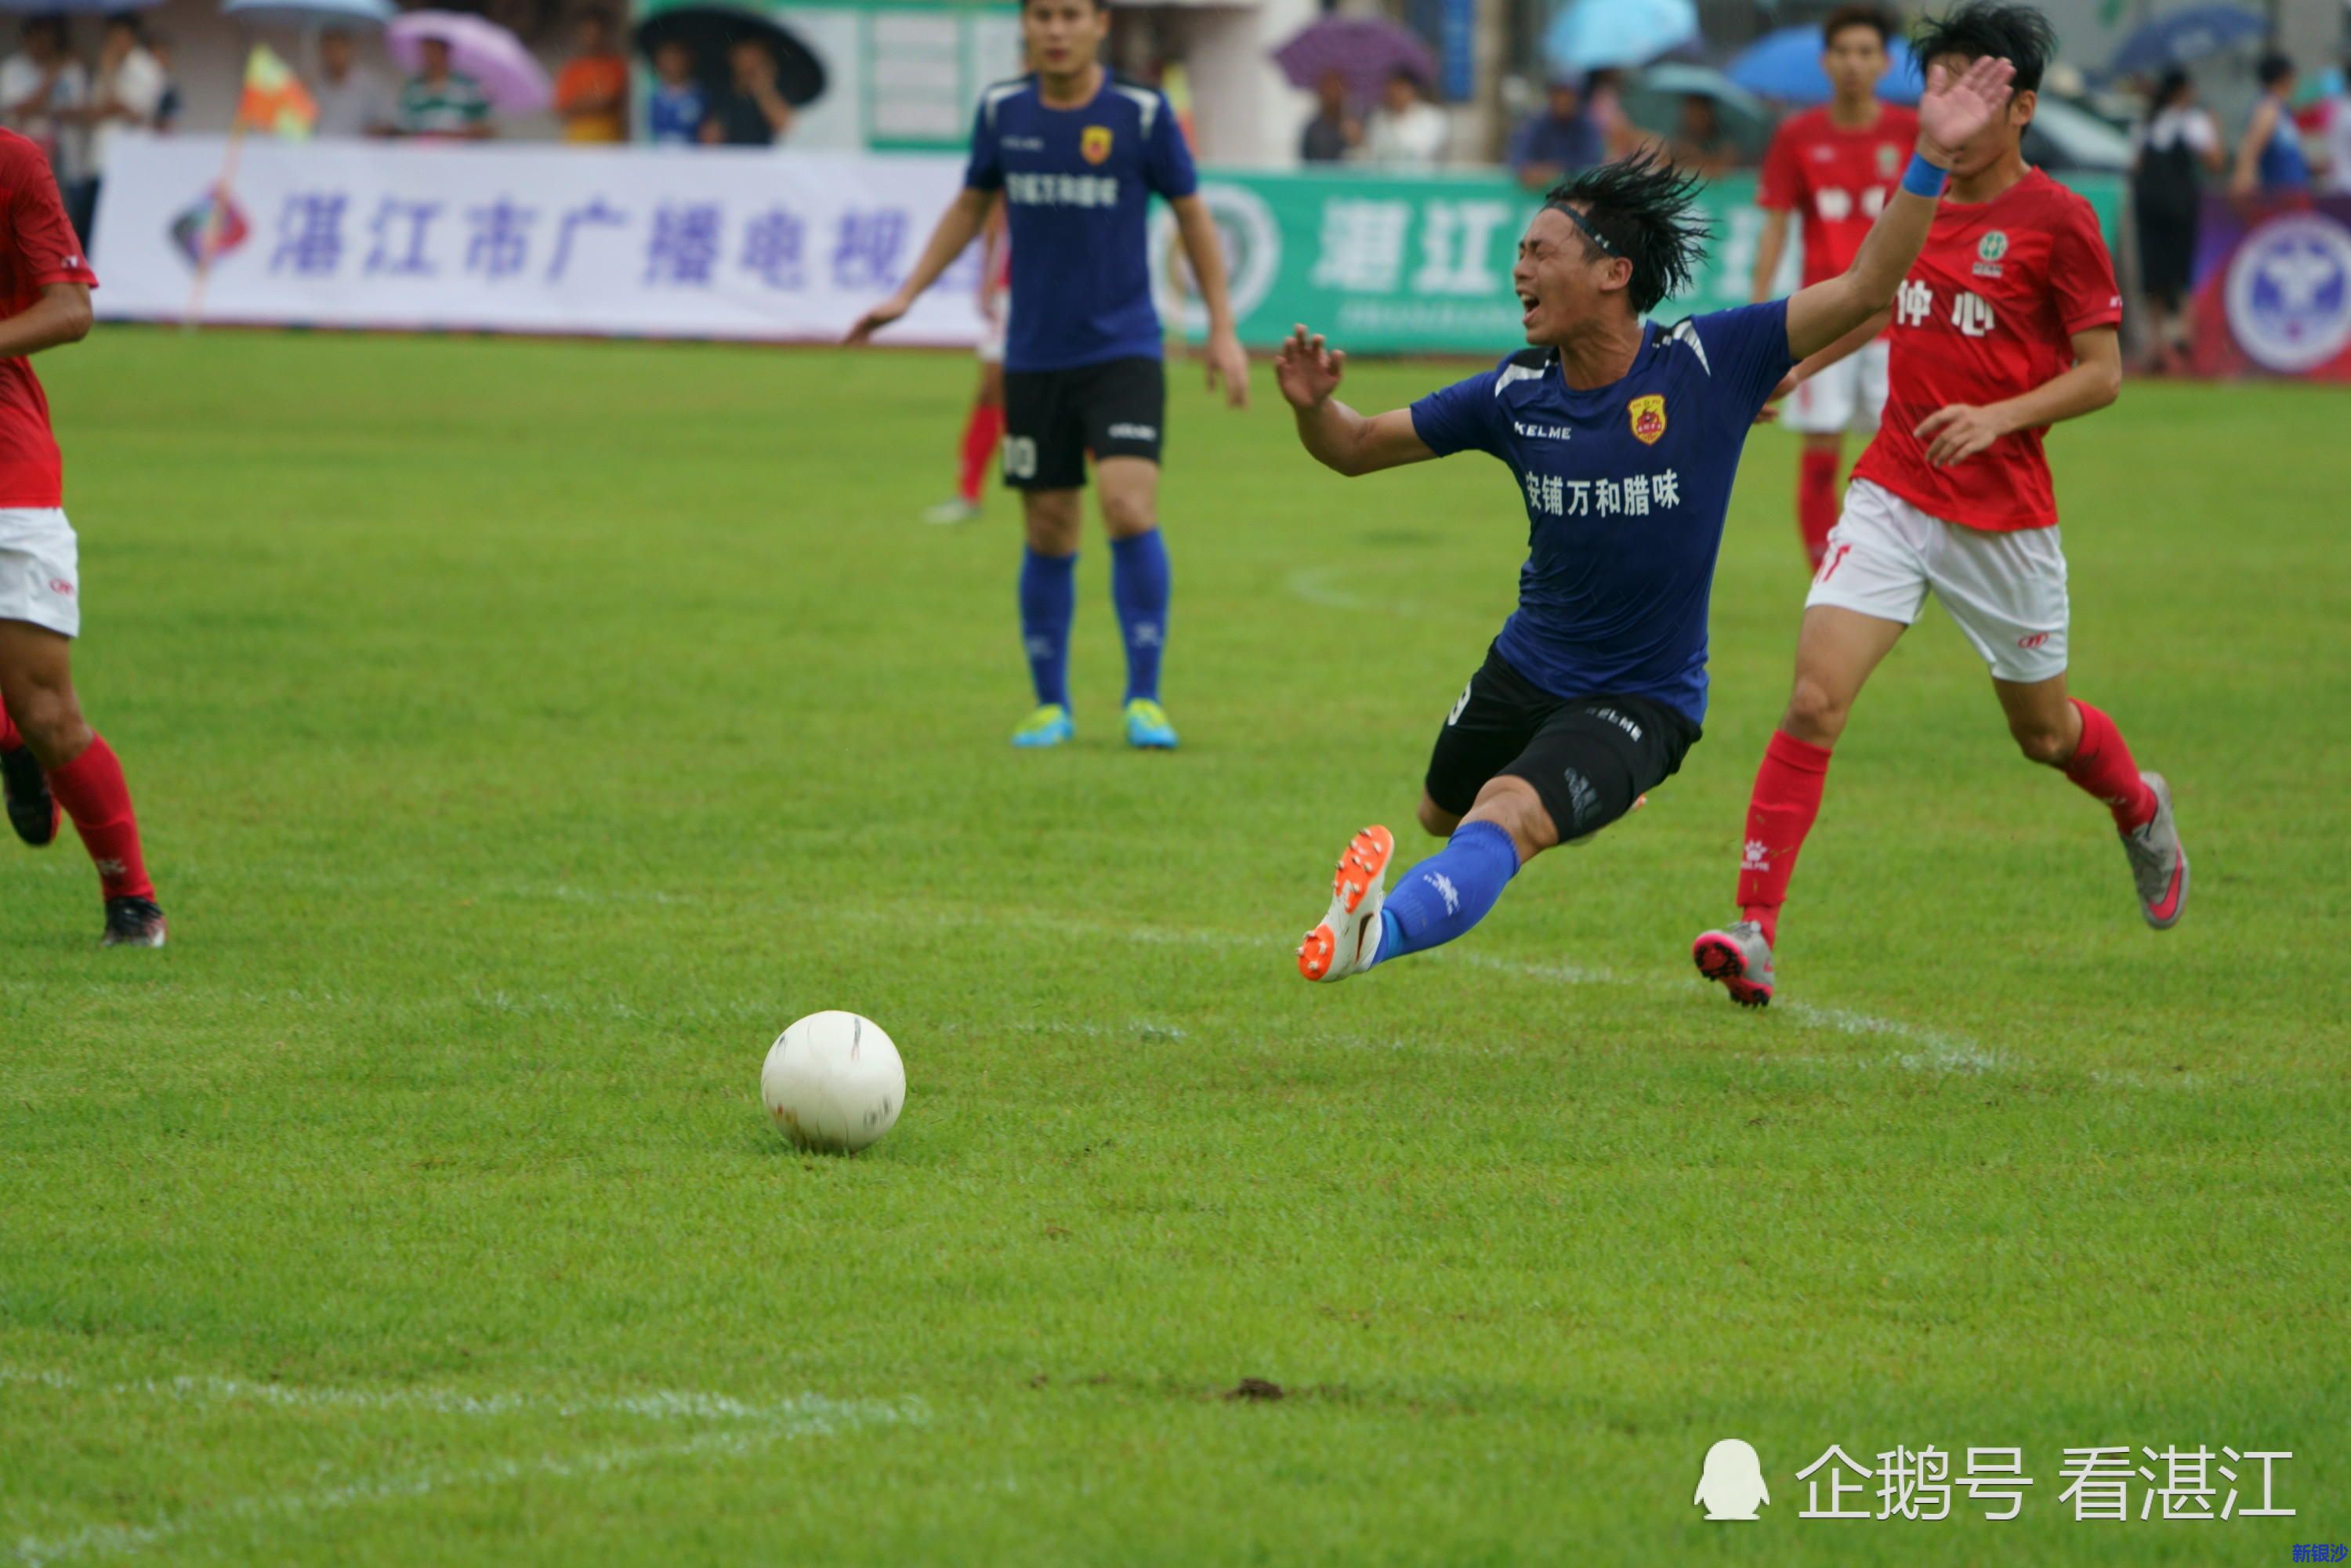 2018年湛江市甲级足球比赛正式开踢